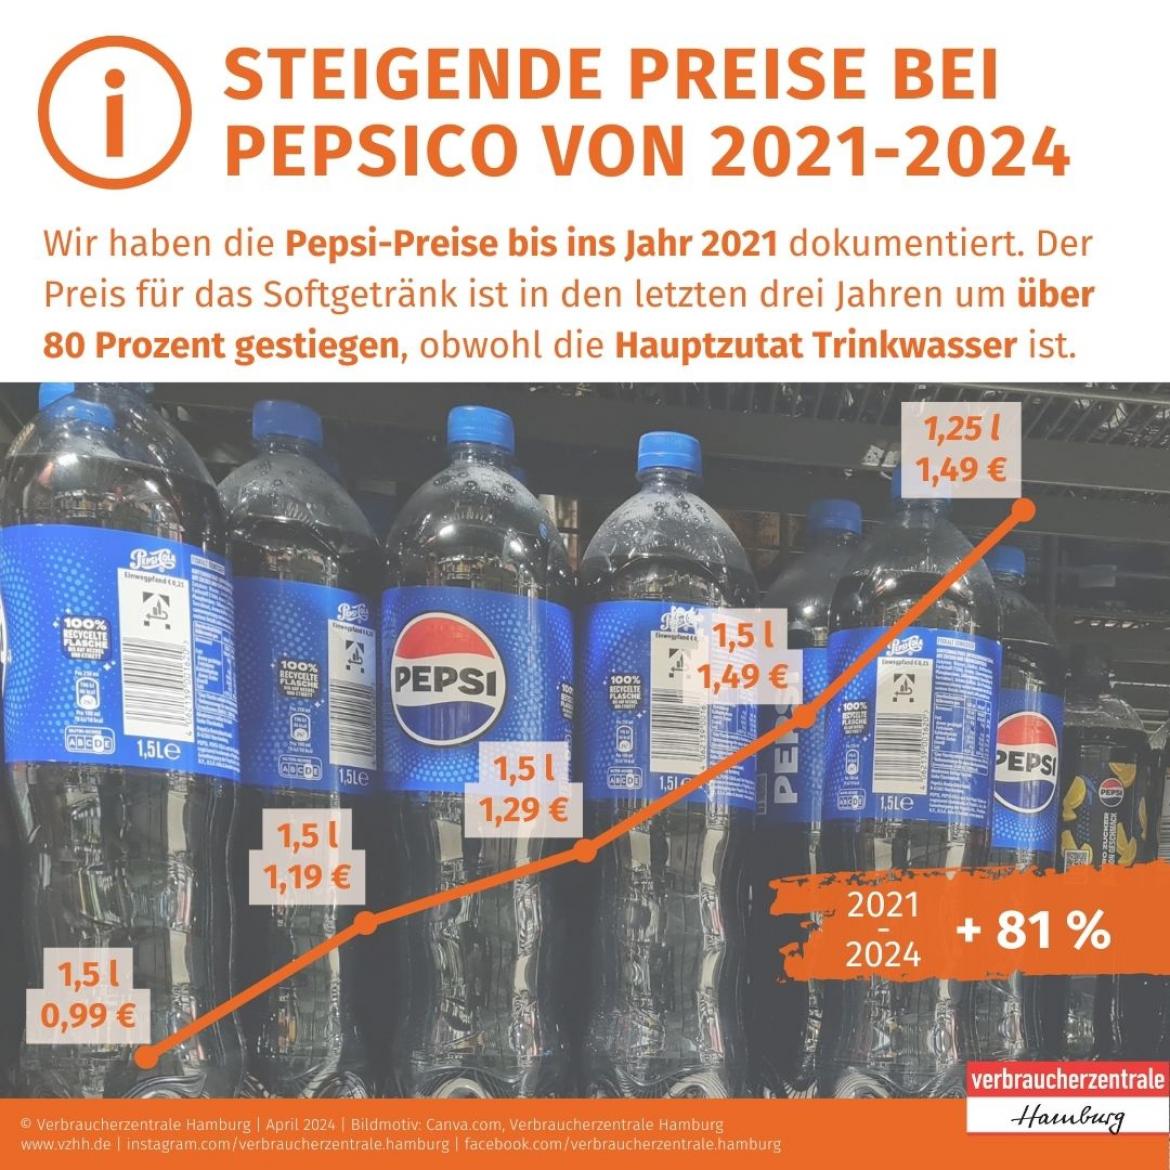 Preiserhöhung bei Pepsi von 2021-2024